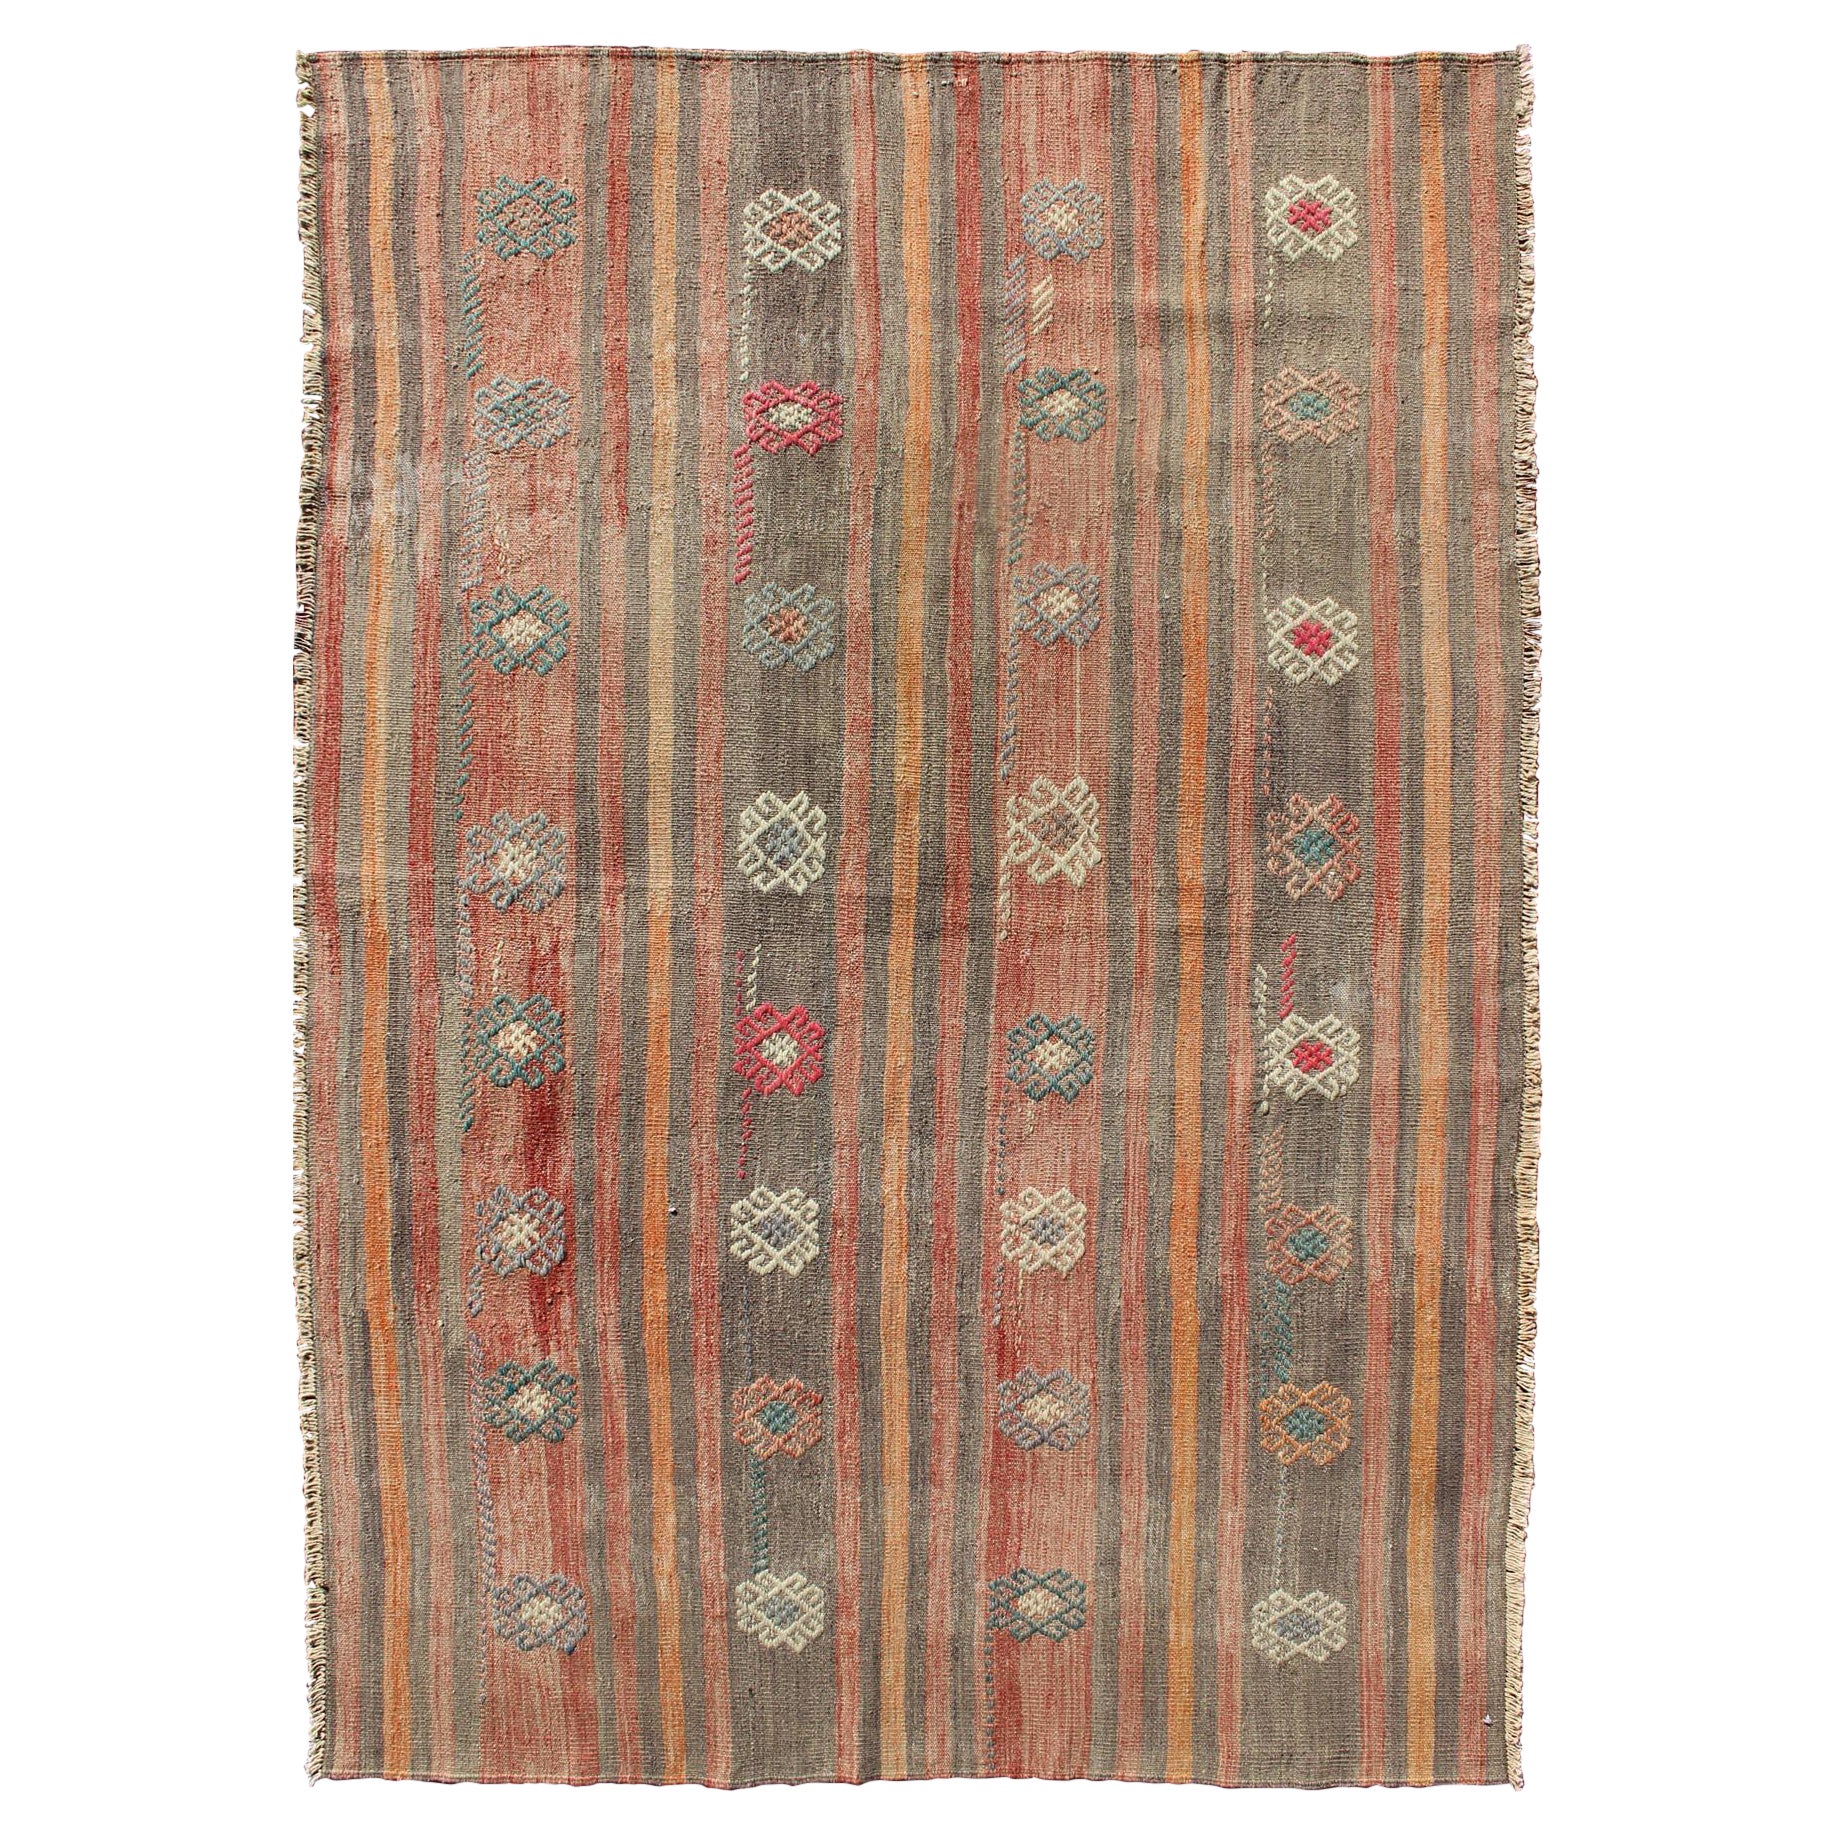 Tapis Kilim turc vintage coloré à tissage plat avec motif géométrique rayé